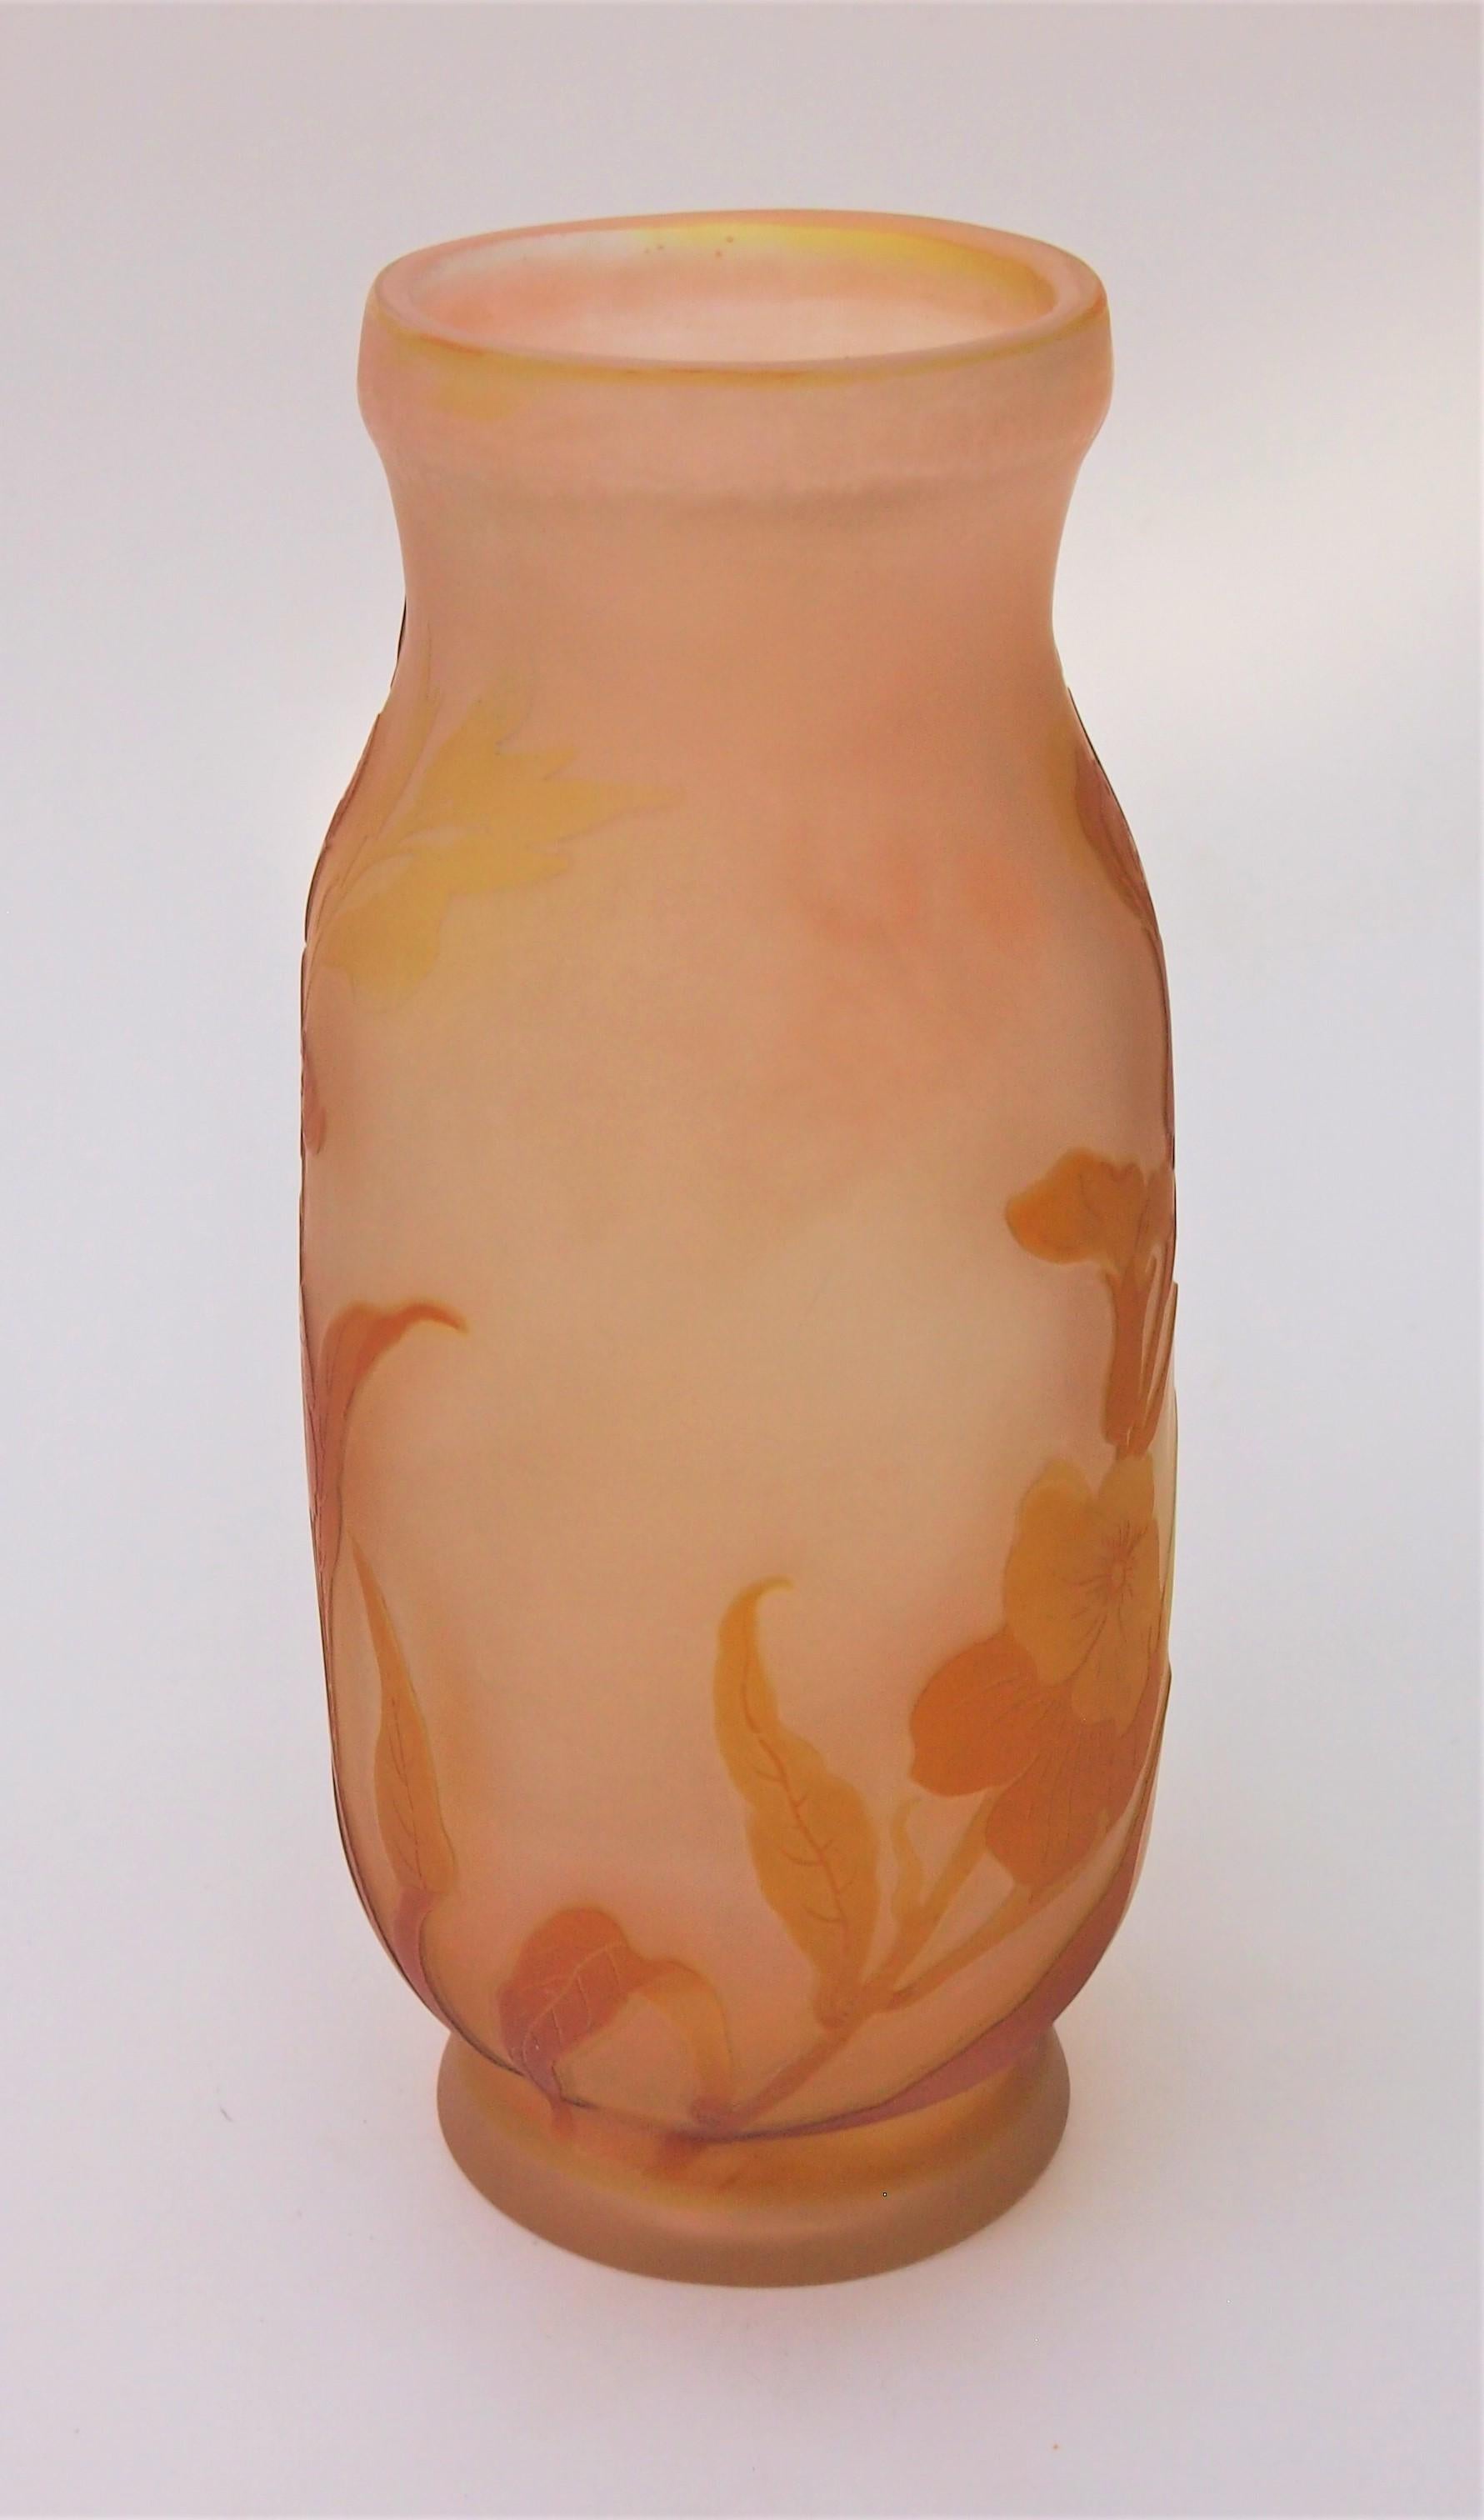 Super frühe Emile Galle dreifarbige Kamee-Vase in der ungewöhnlichen Kombination von Orange und Gelb und Rosa mit ungewöhnlichen wilden Blumen in der Blüte mit einer großen frühen Signatur um 1899 - siehe Bild 5 

Emile Galle war wahrscheinlich der